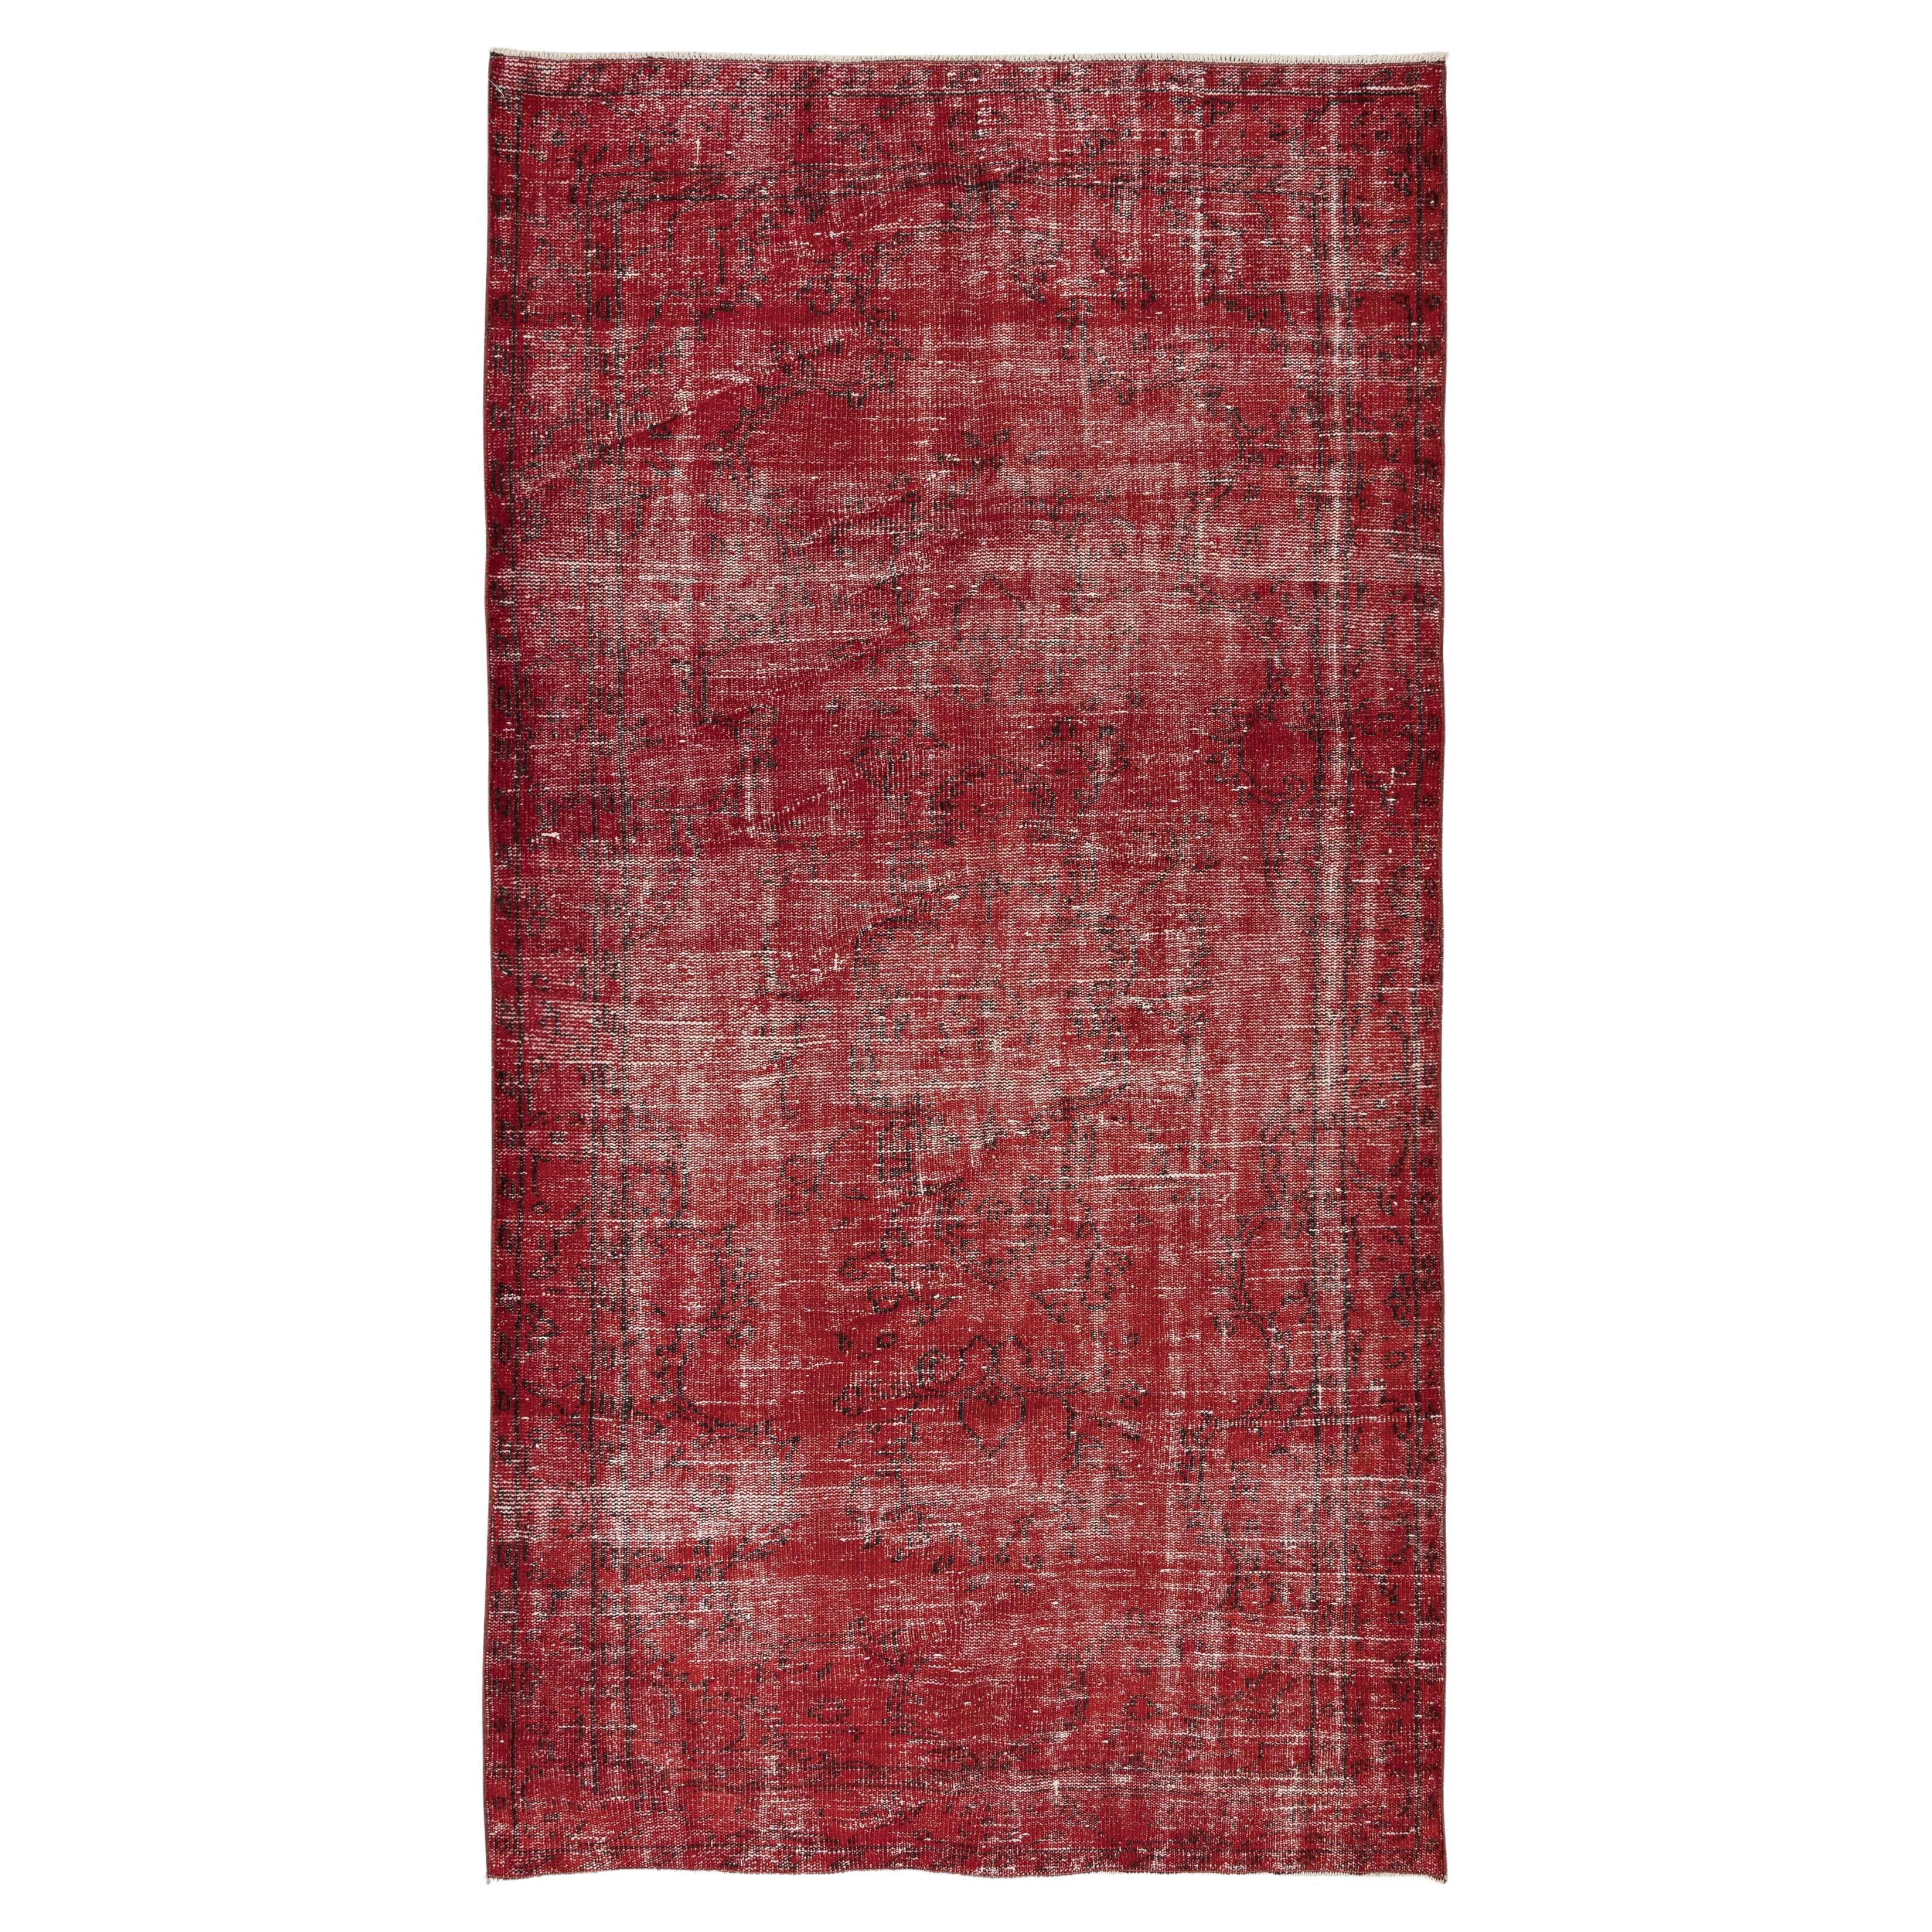 5x8.6 Ft Handgefertigter türkischer Teppich aus den 1960er Jahren, neu gefärbt in Rot, ideal für moderne Innenräume